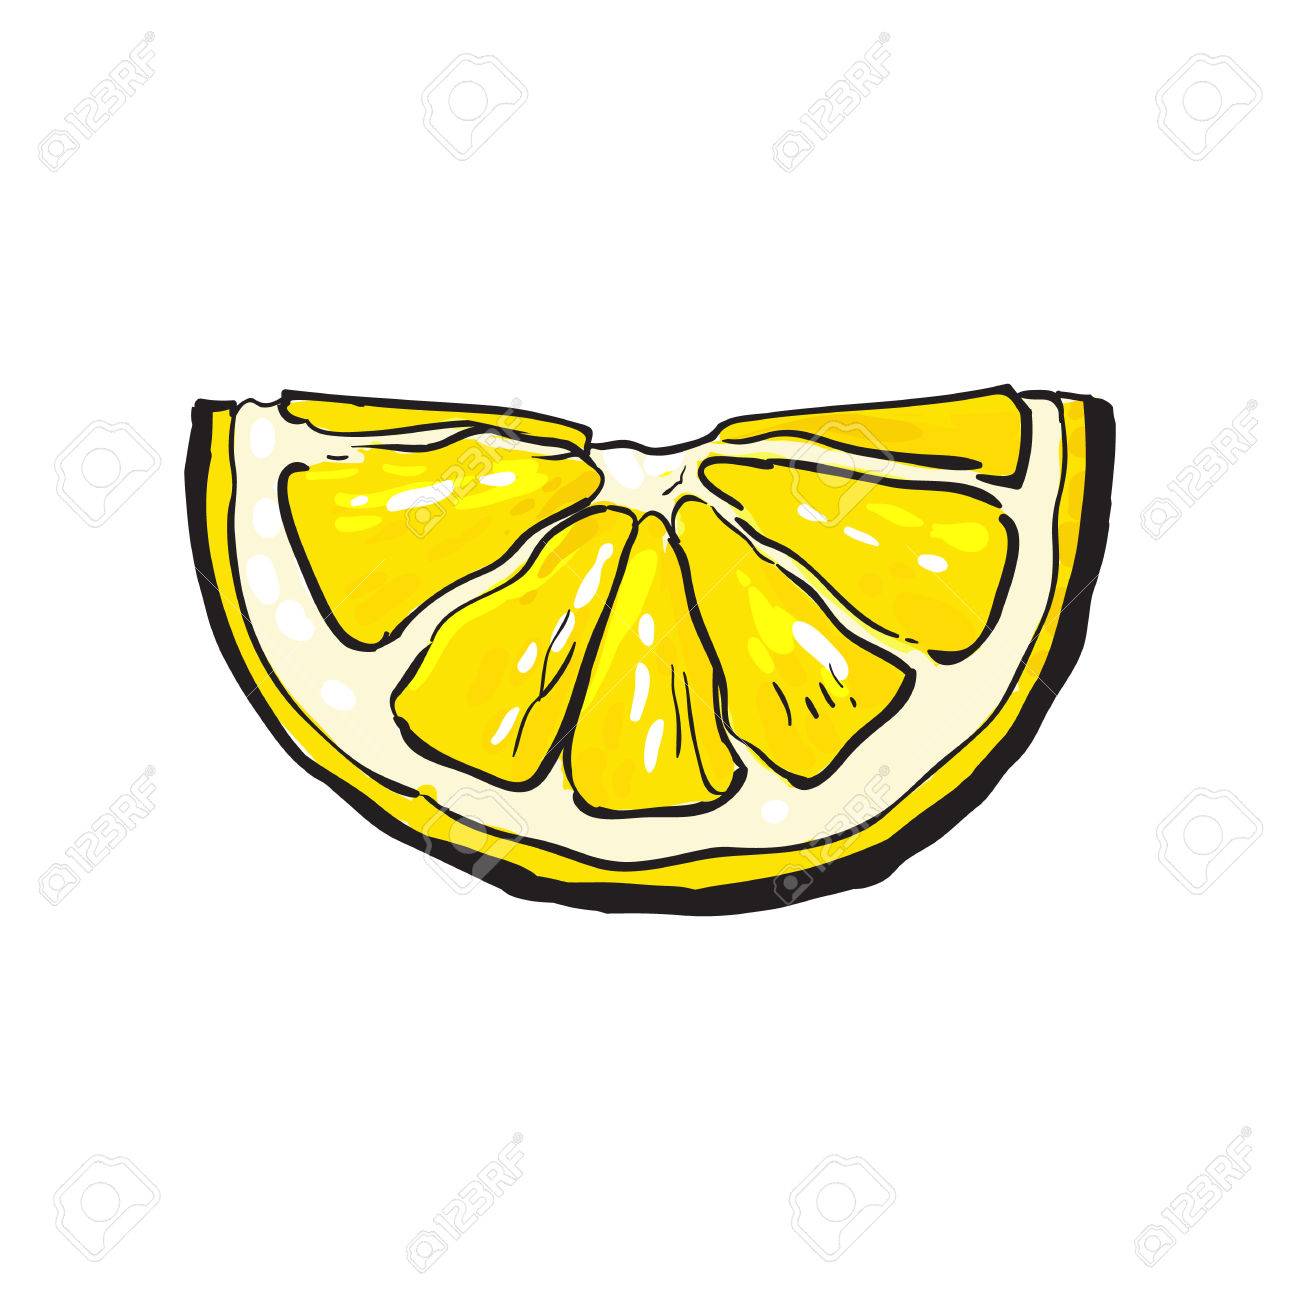 Lemon Drawing at GetDrawings Free download